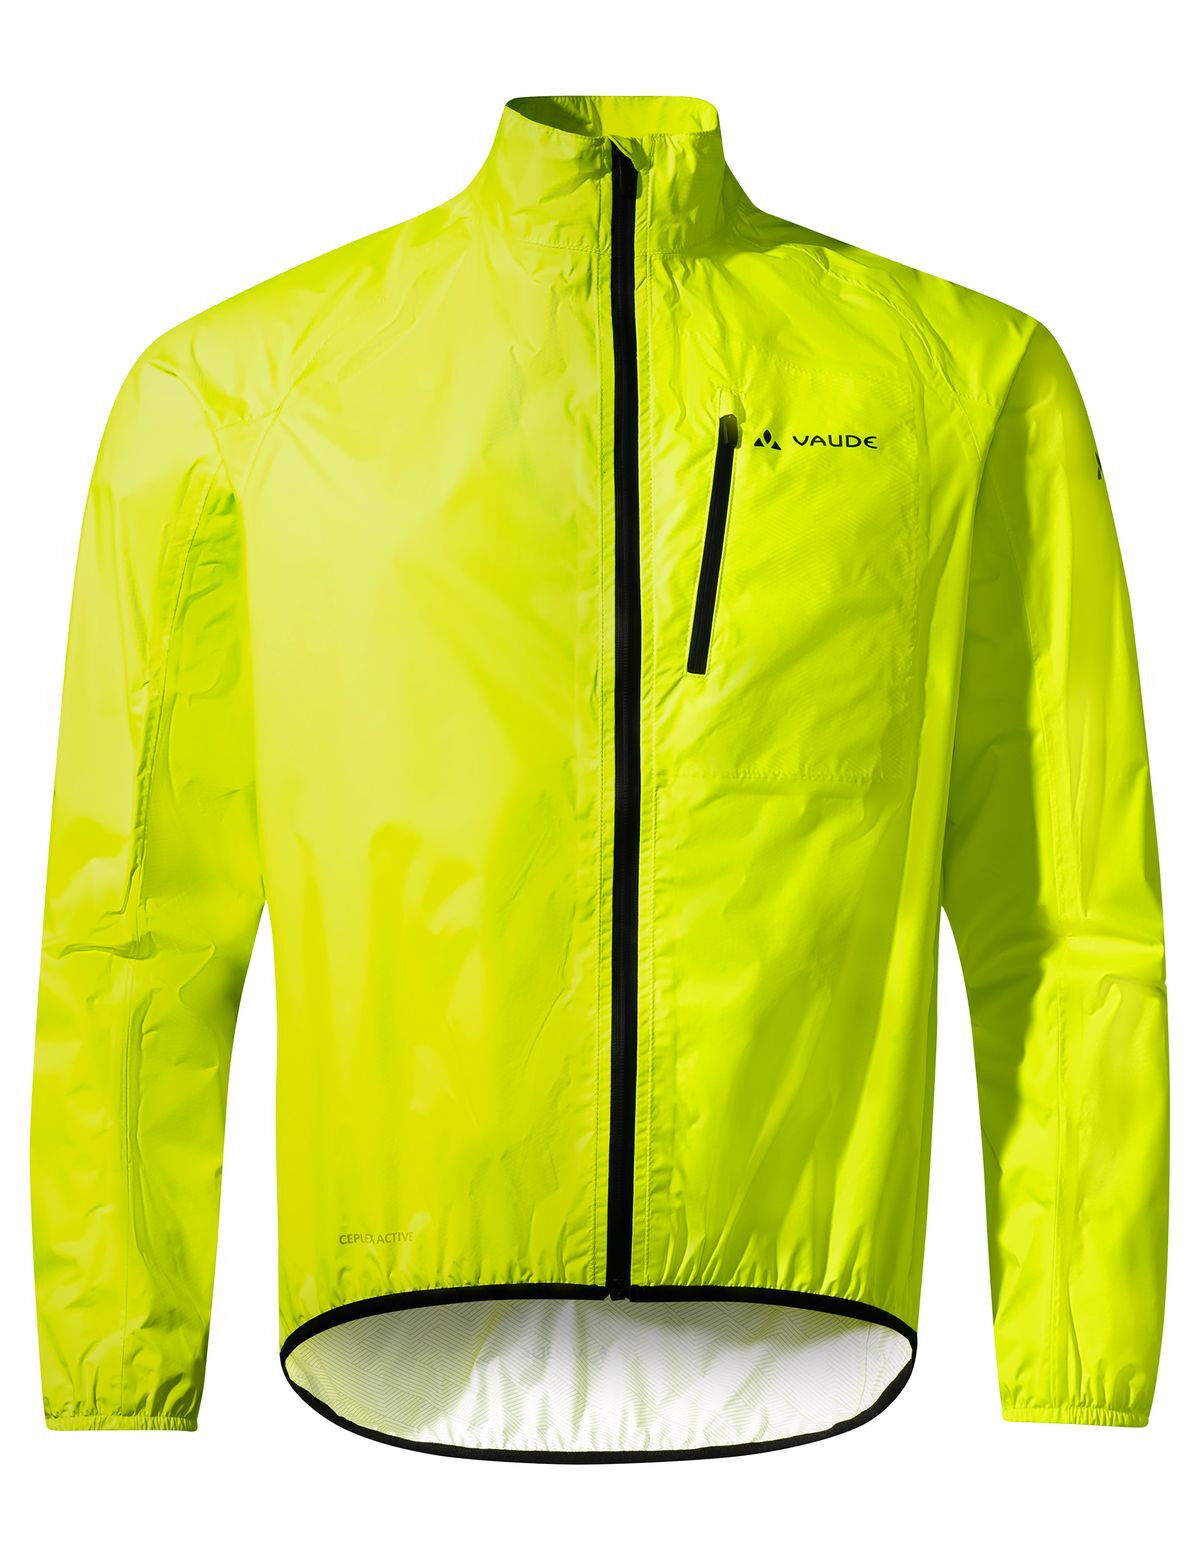 Vaude Drop Jacket III - Cycling jacket - Men's